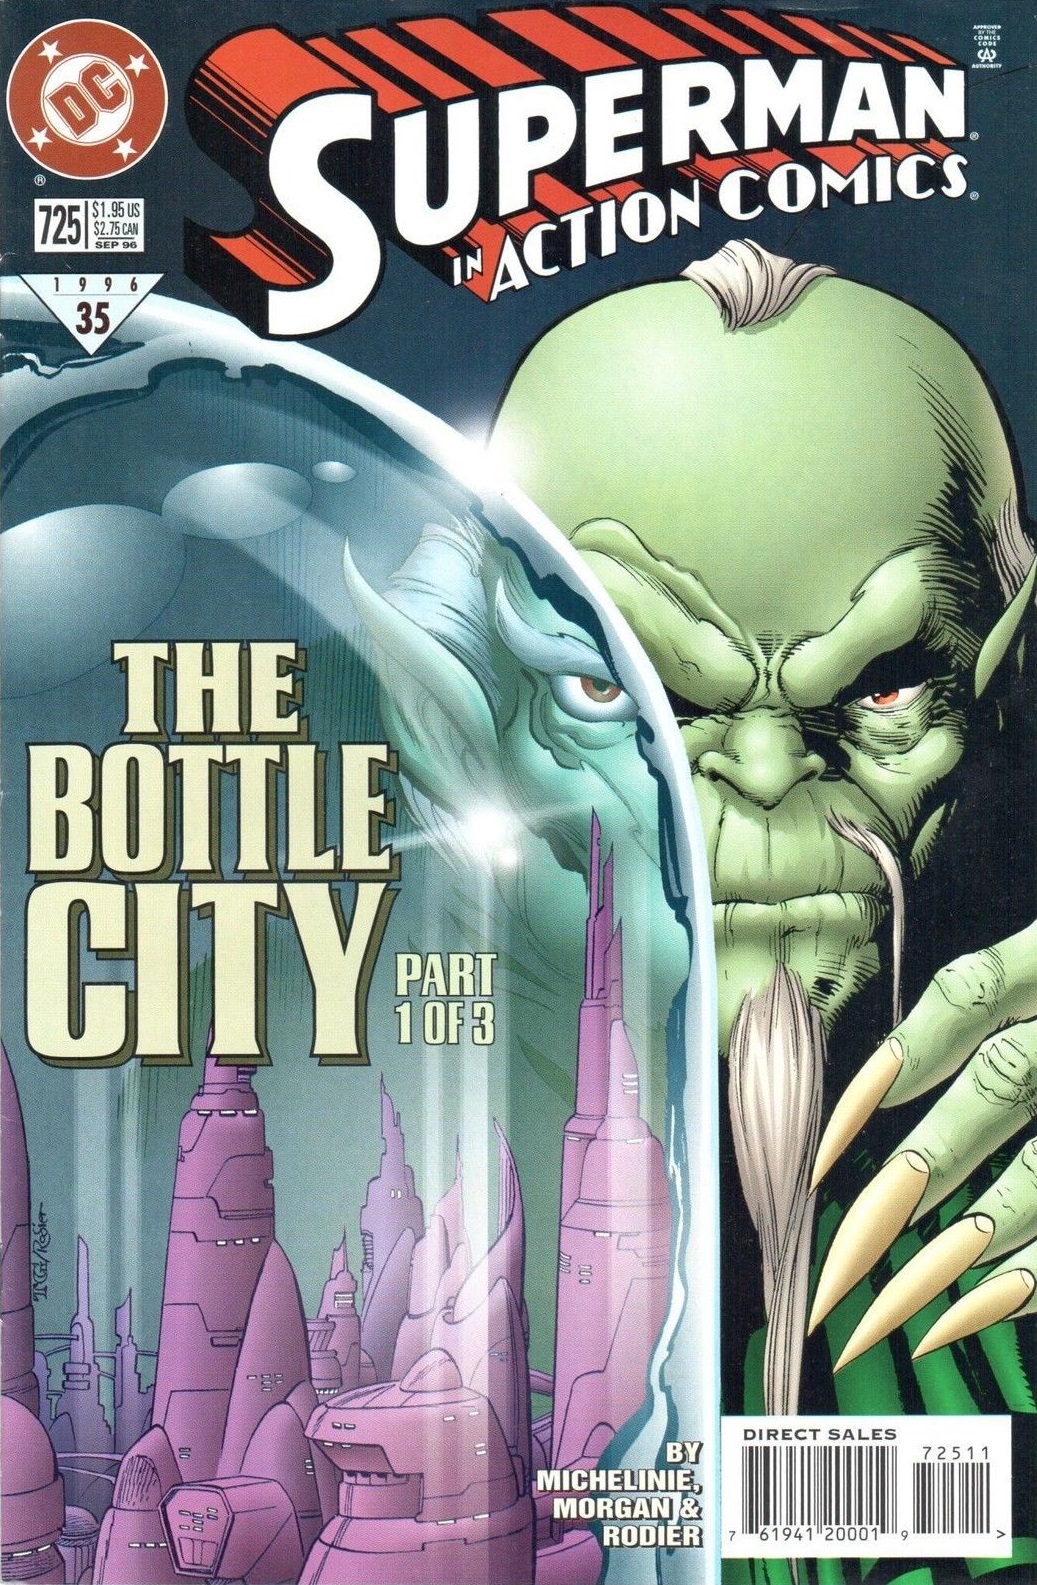 Action Comics Vol. 1 #725